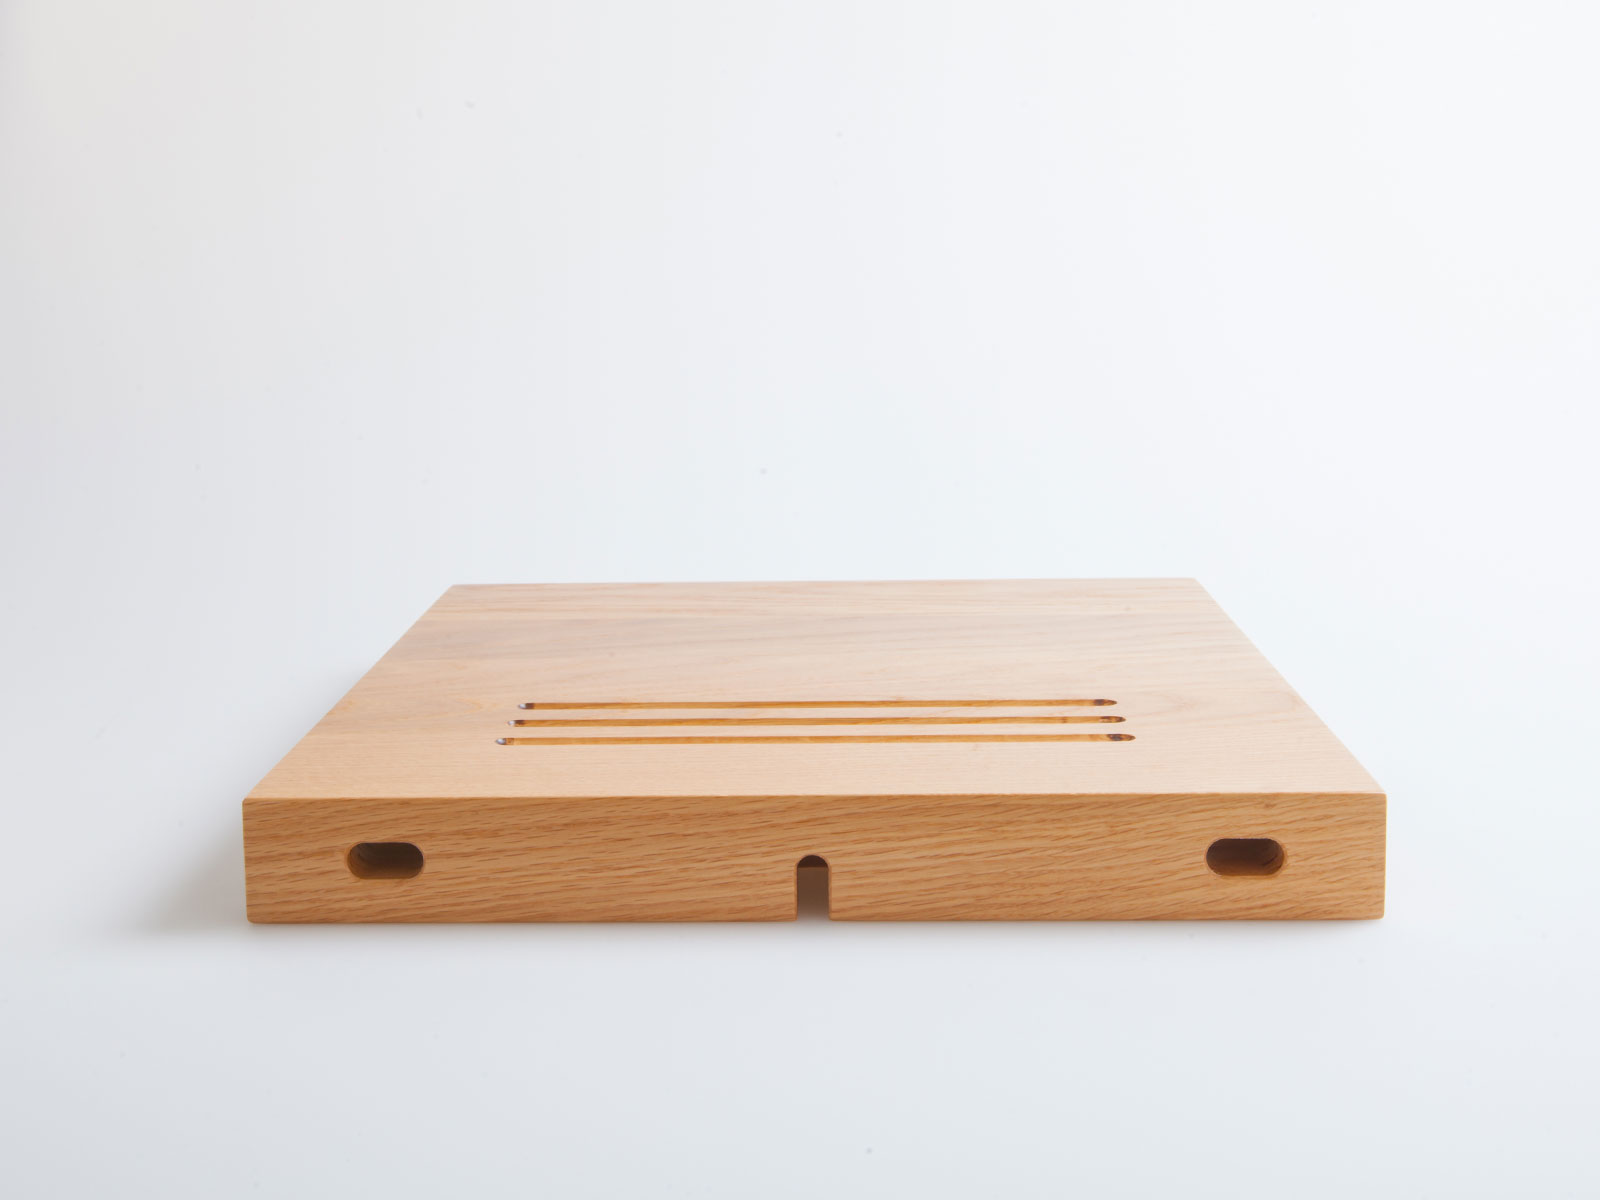 Hrvatski startup Modulos lansirao Kickstarter kampanju za proizvodnju modularnih stolova